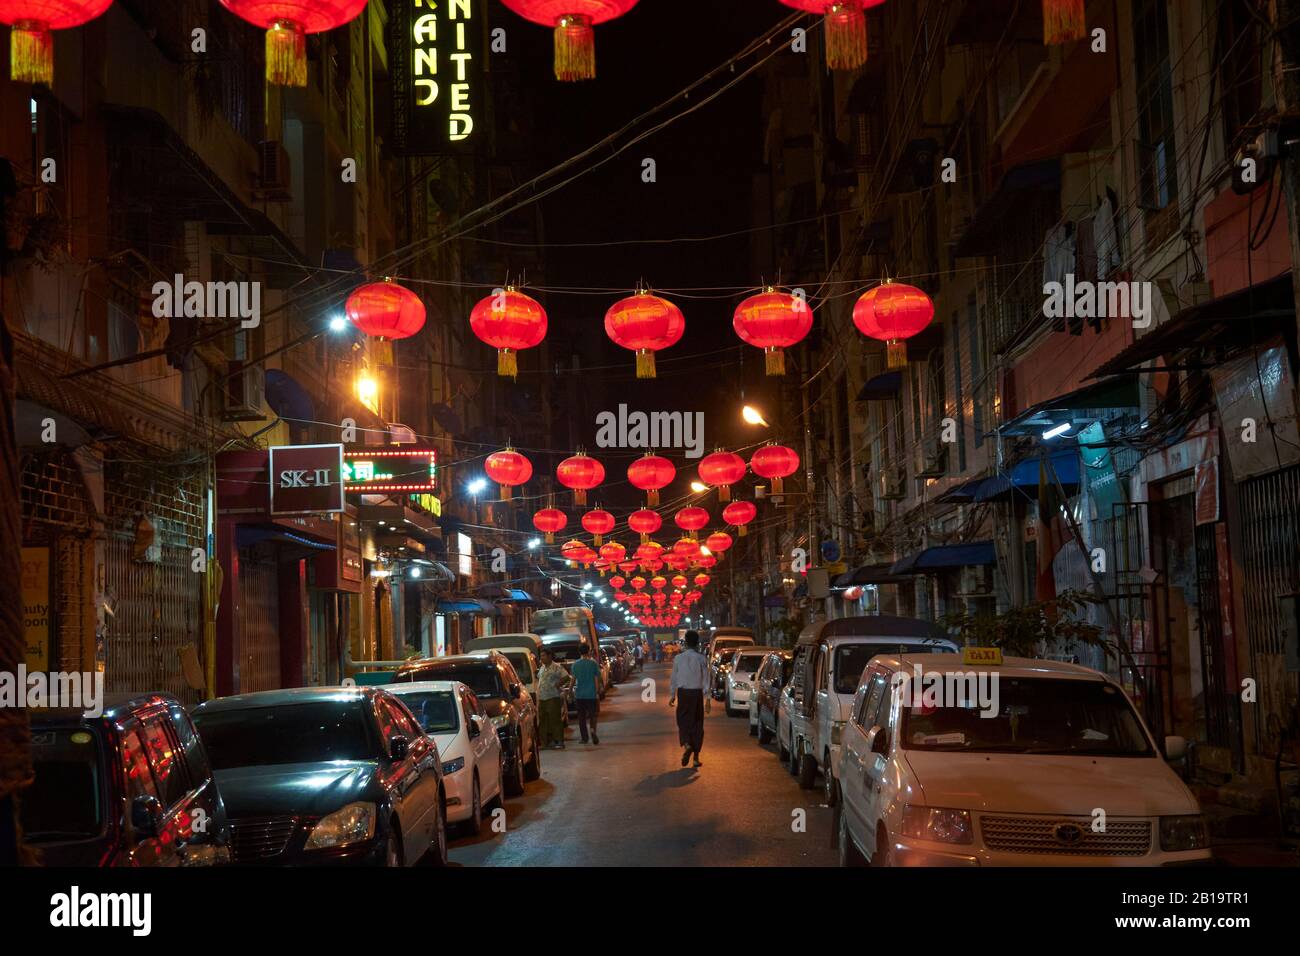 Für das chinesische Neujahrsfest mit roten Lampions geschmückte Straße, chinesisches Viertel, Yangon, Myanmar Stockfoto